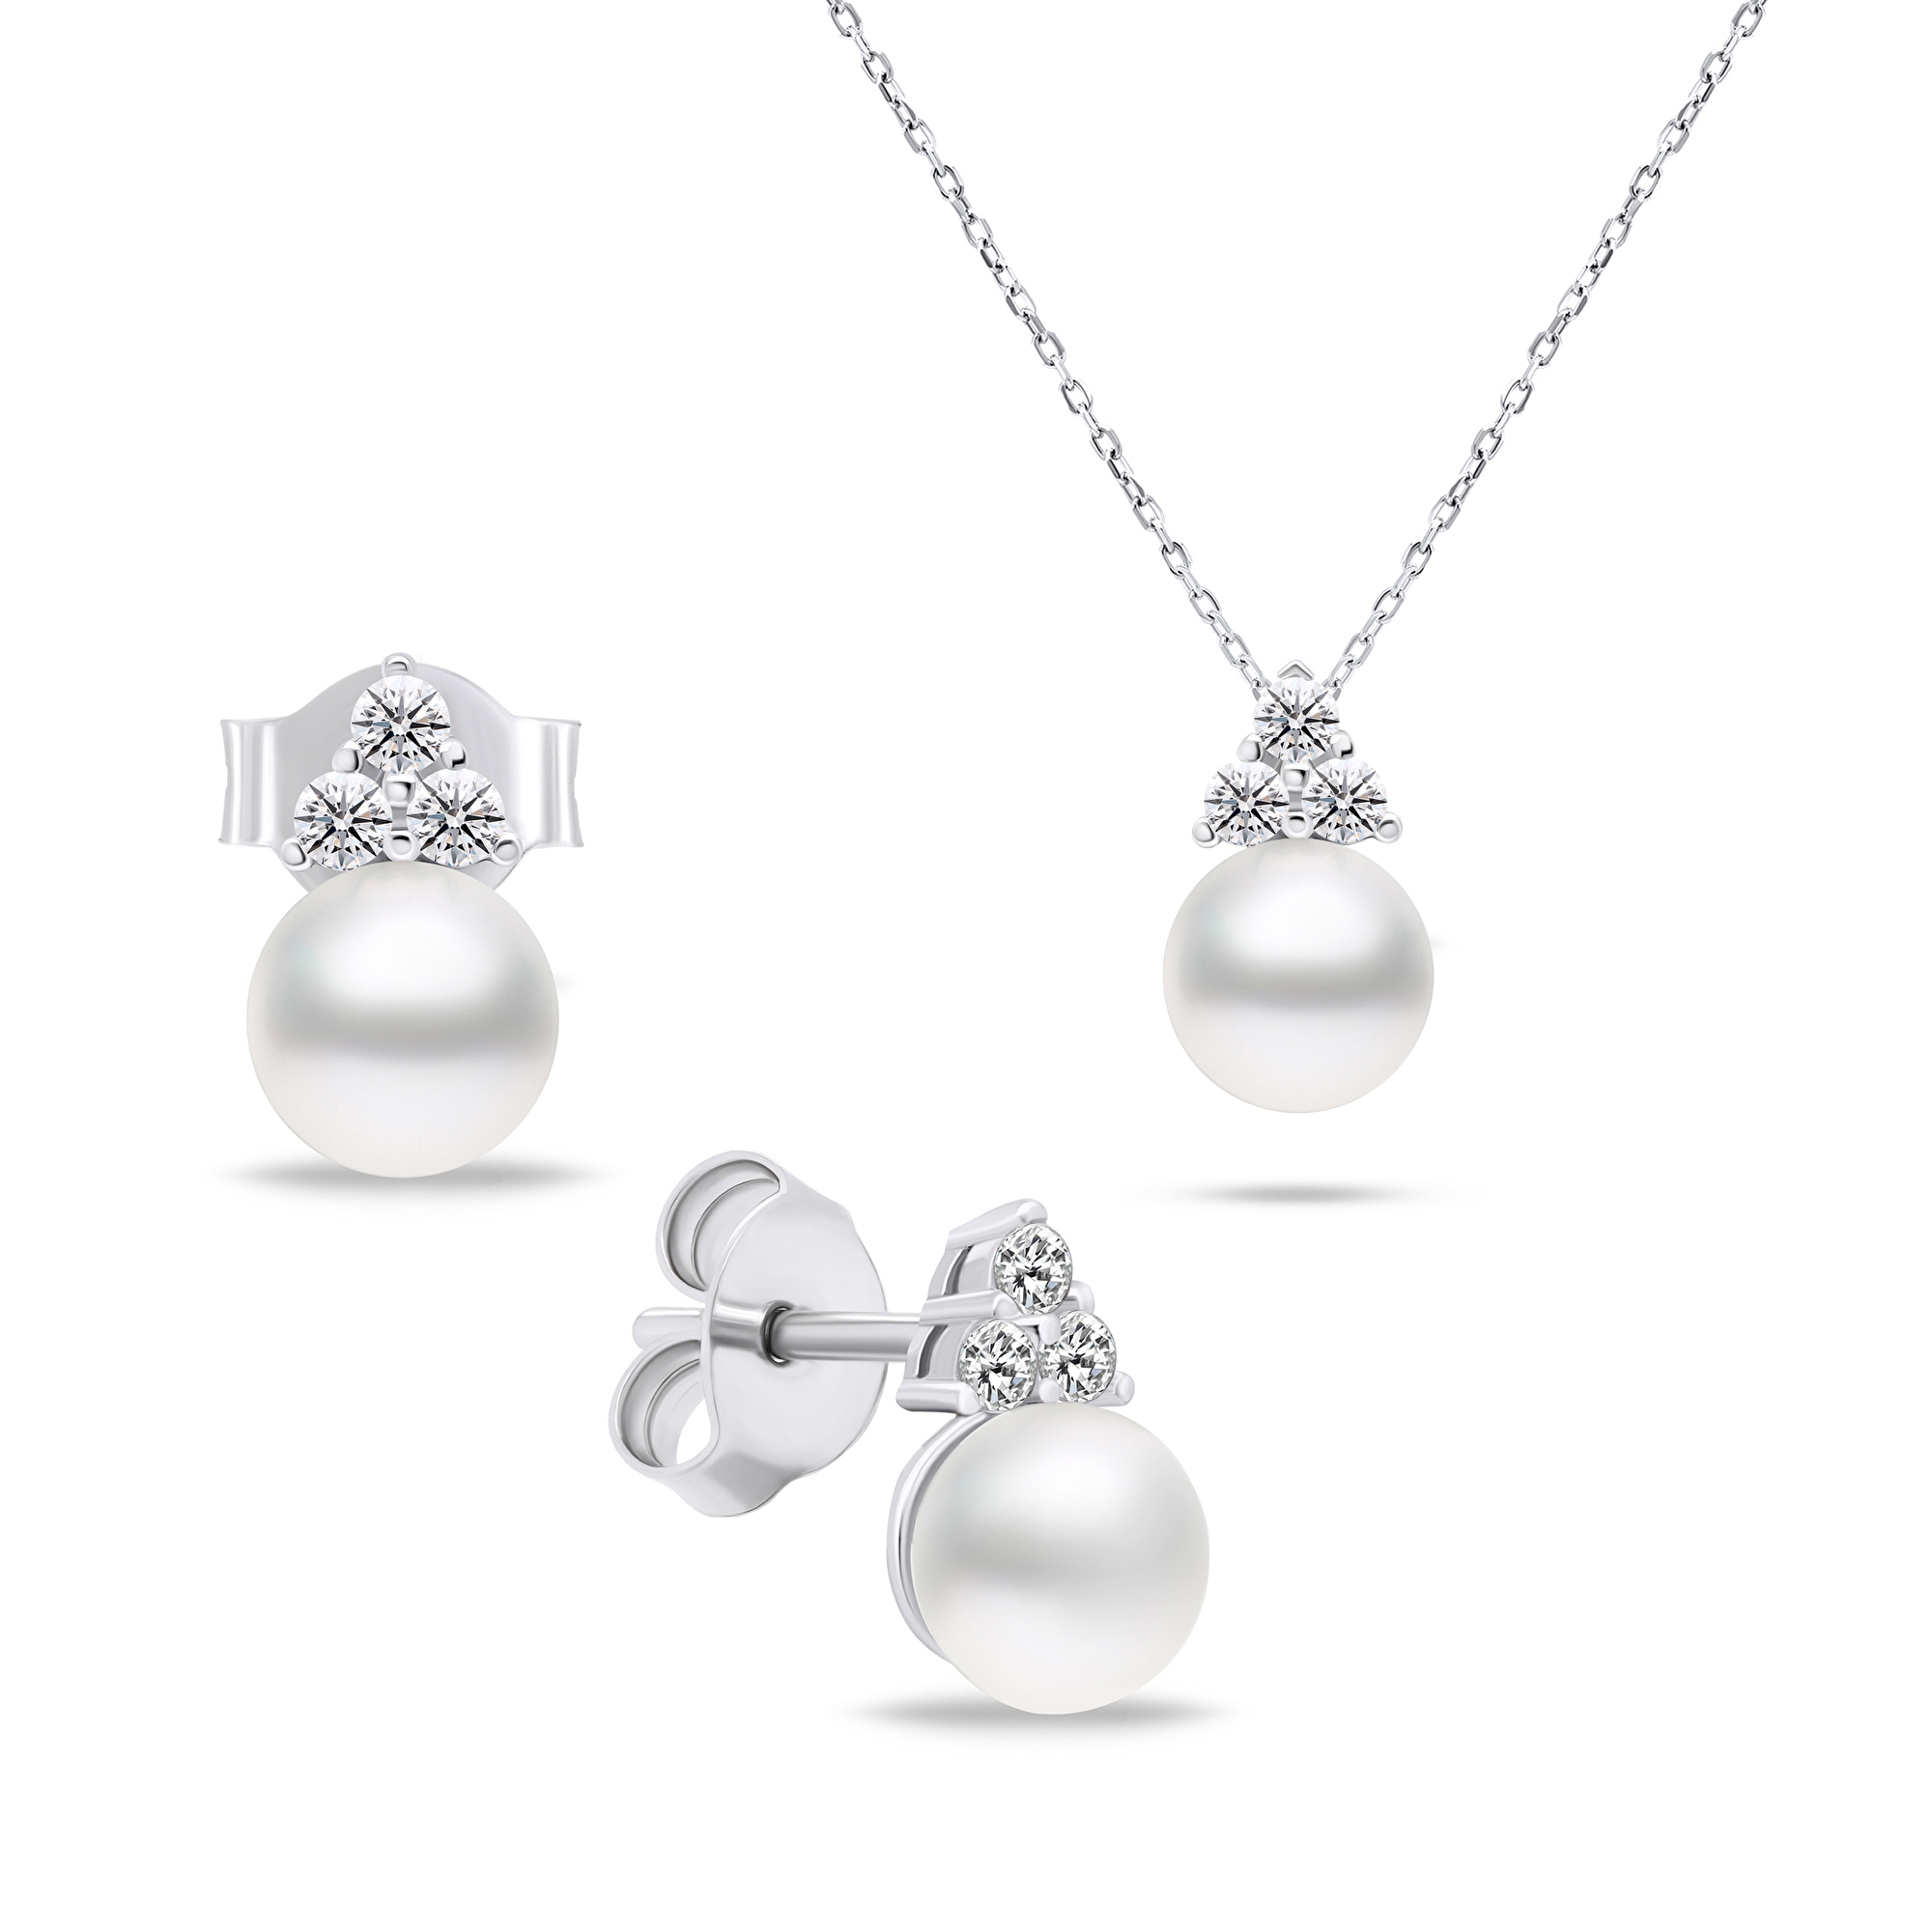 Brilio Silver Nadčasová sada šperkov s pravými perlami SET228W (náušnice, náhrdelník)